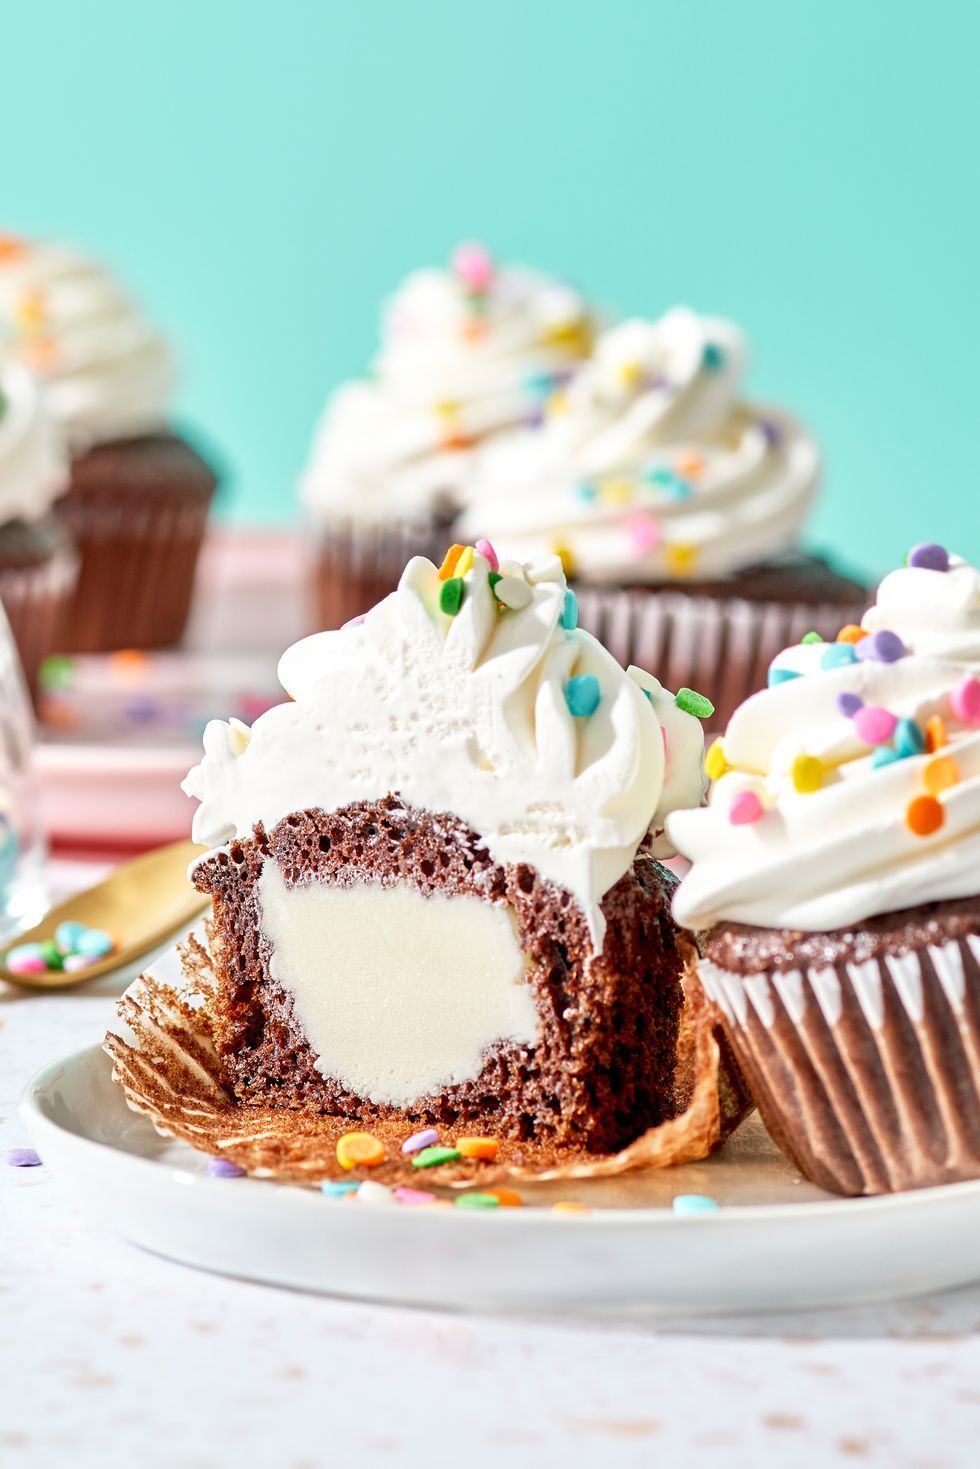 30 recetas de cupcakes fáciles, ricas y originales